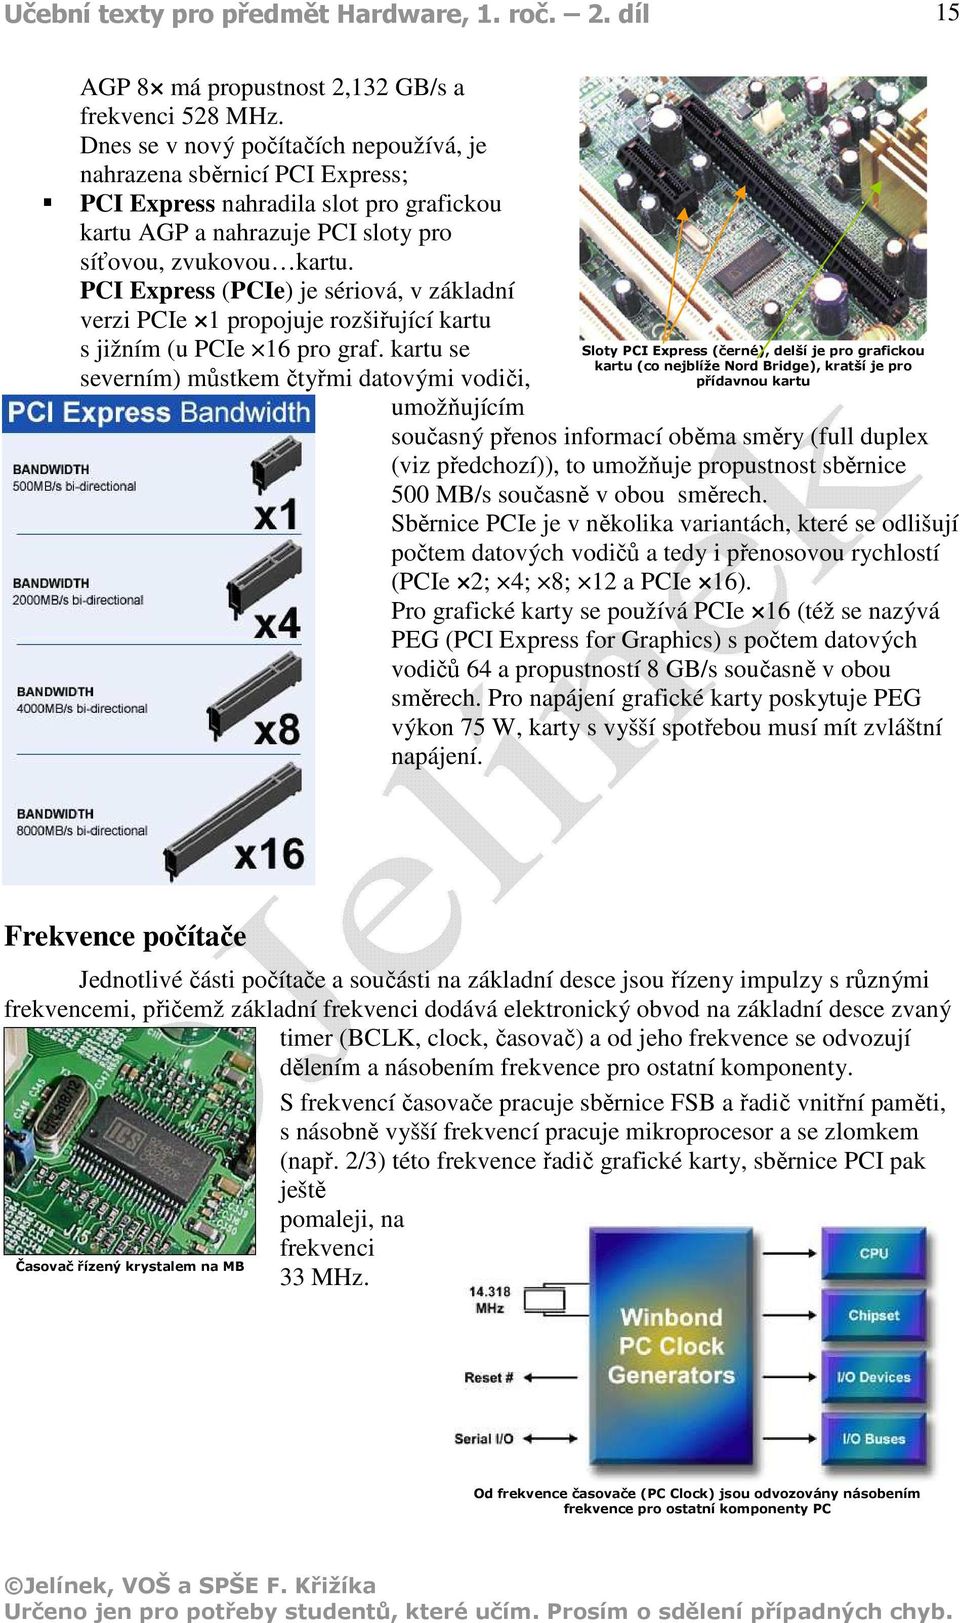 PCI Express (PCIe) je sériová, v základní verzi PCIe 1 propojuje rozšiřující kartu s jižním (u PCIe 16 pro graf.